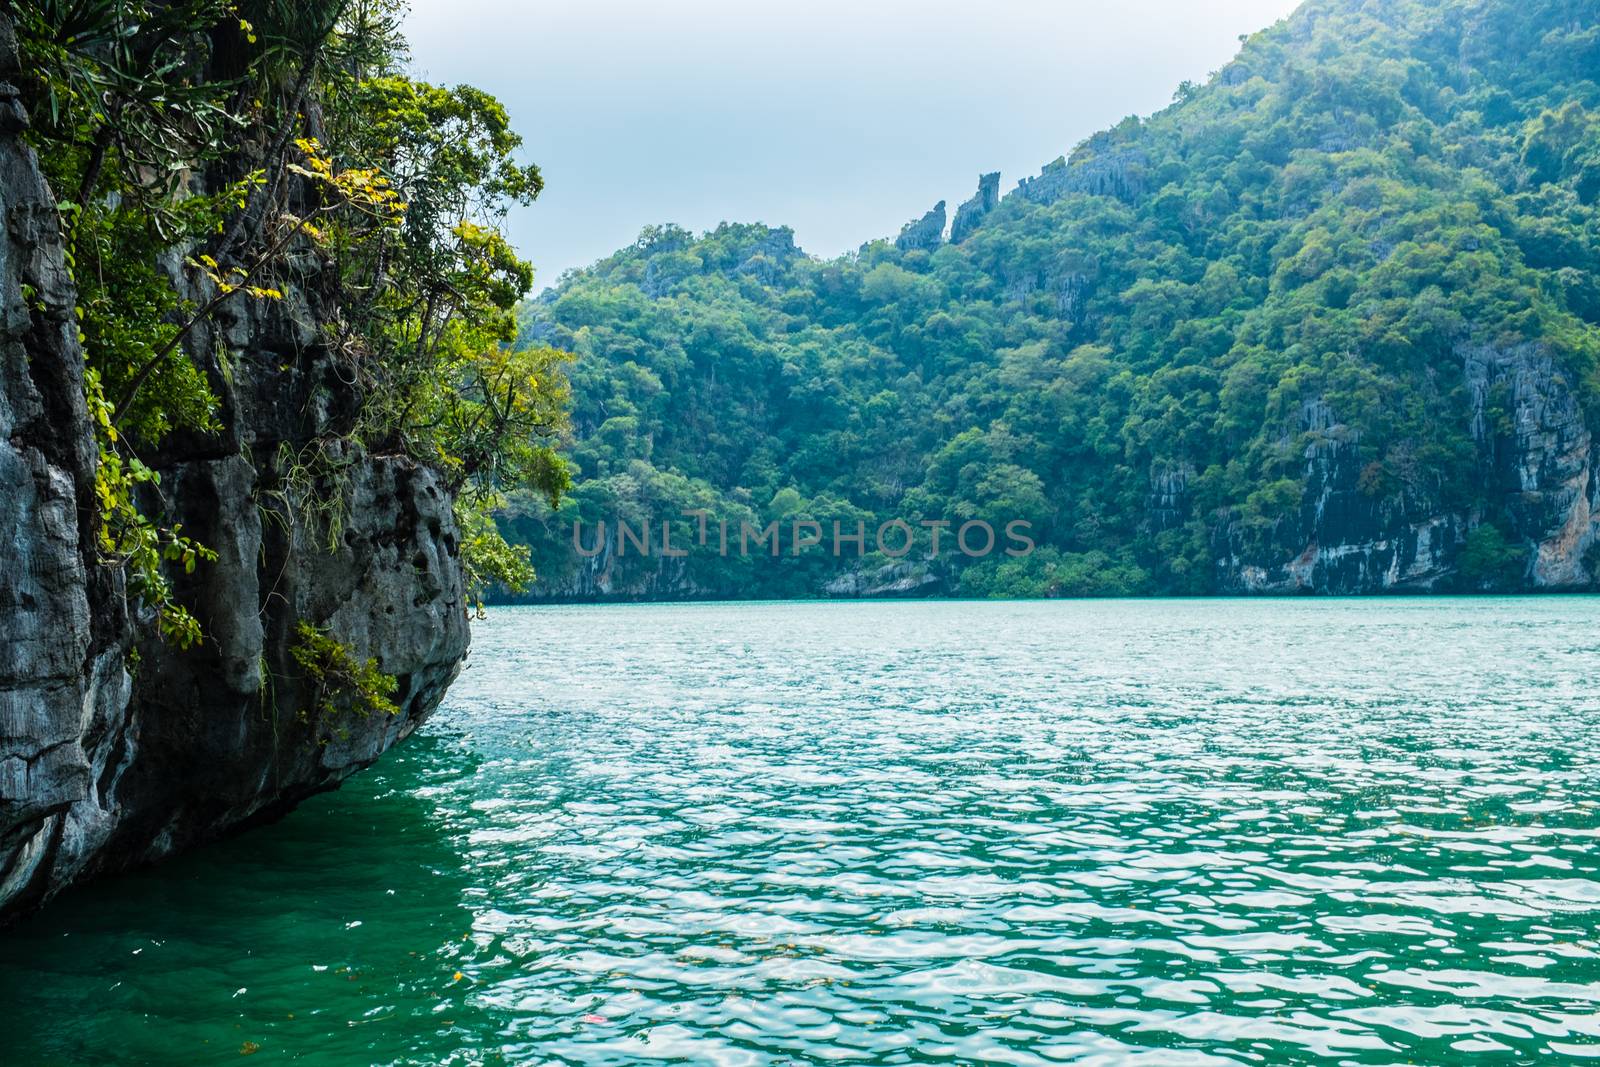 Emerald Lake at Angthong island, Thailand